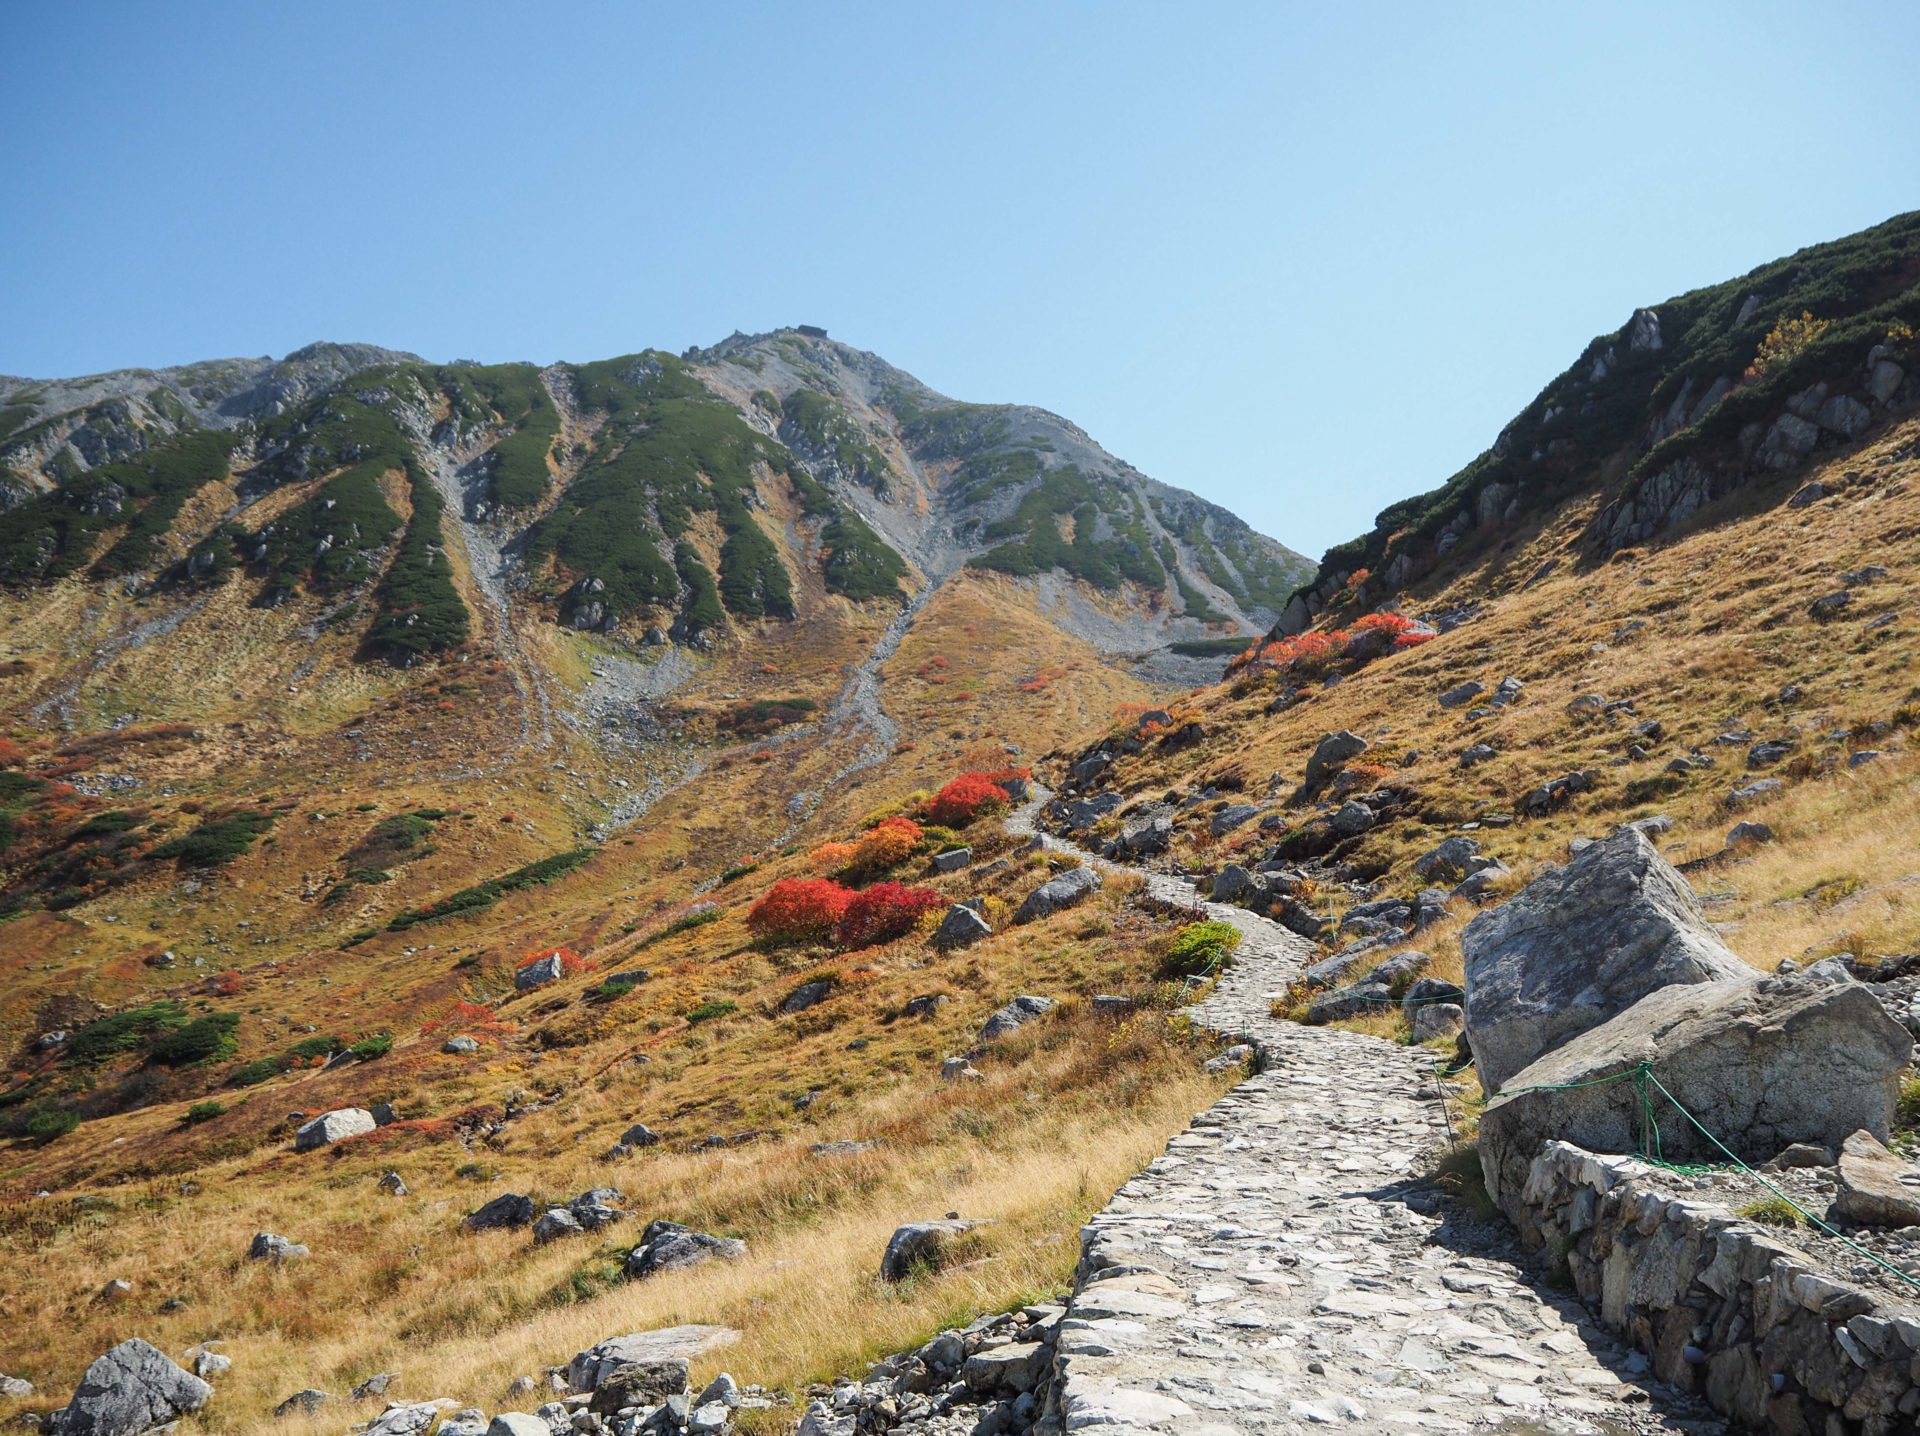 Route Alpine Tateyama-Kurobe dans les Alpes Japonaises - Préfecture de Toyama, porte d'entrée vers les Alpes Japonaises - Voyager au Japon hors des sentiers battus